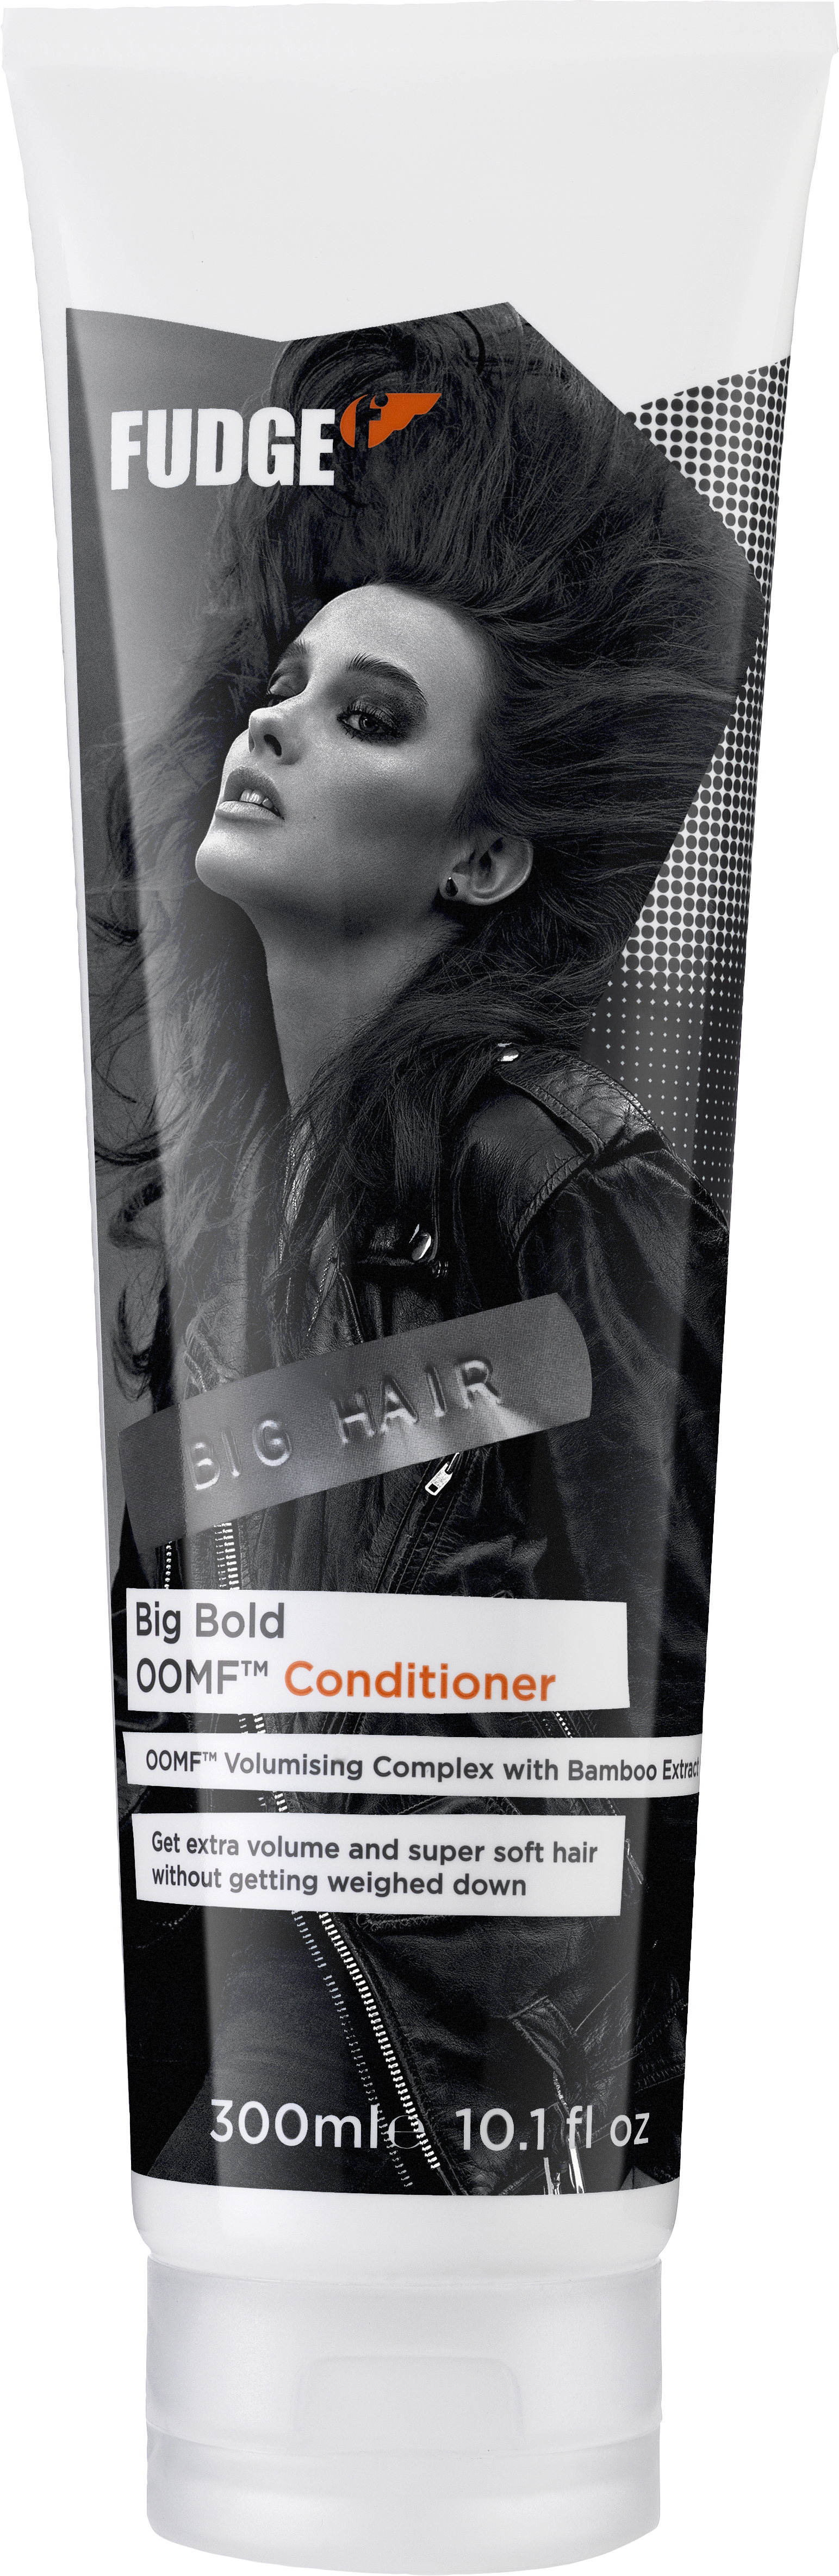 Fudge Big Hair Volume Conditioner 300ml